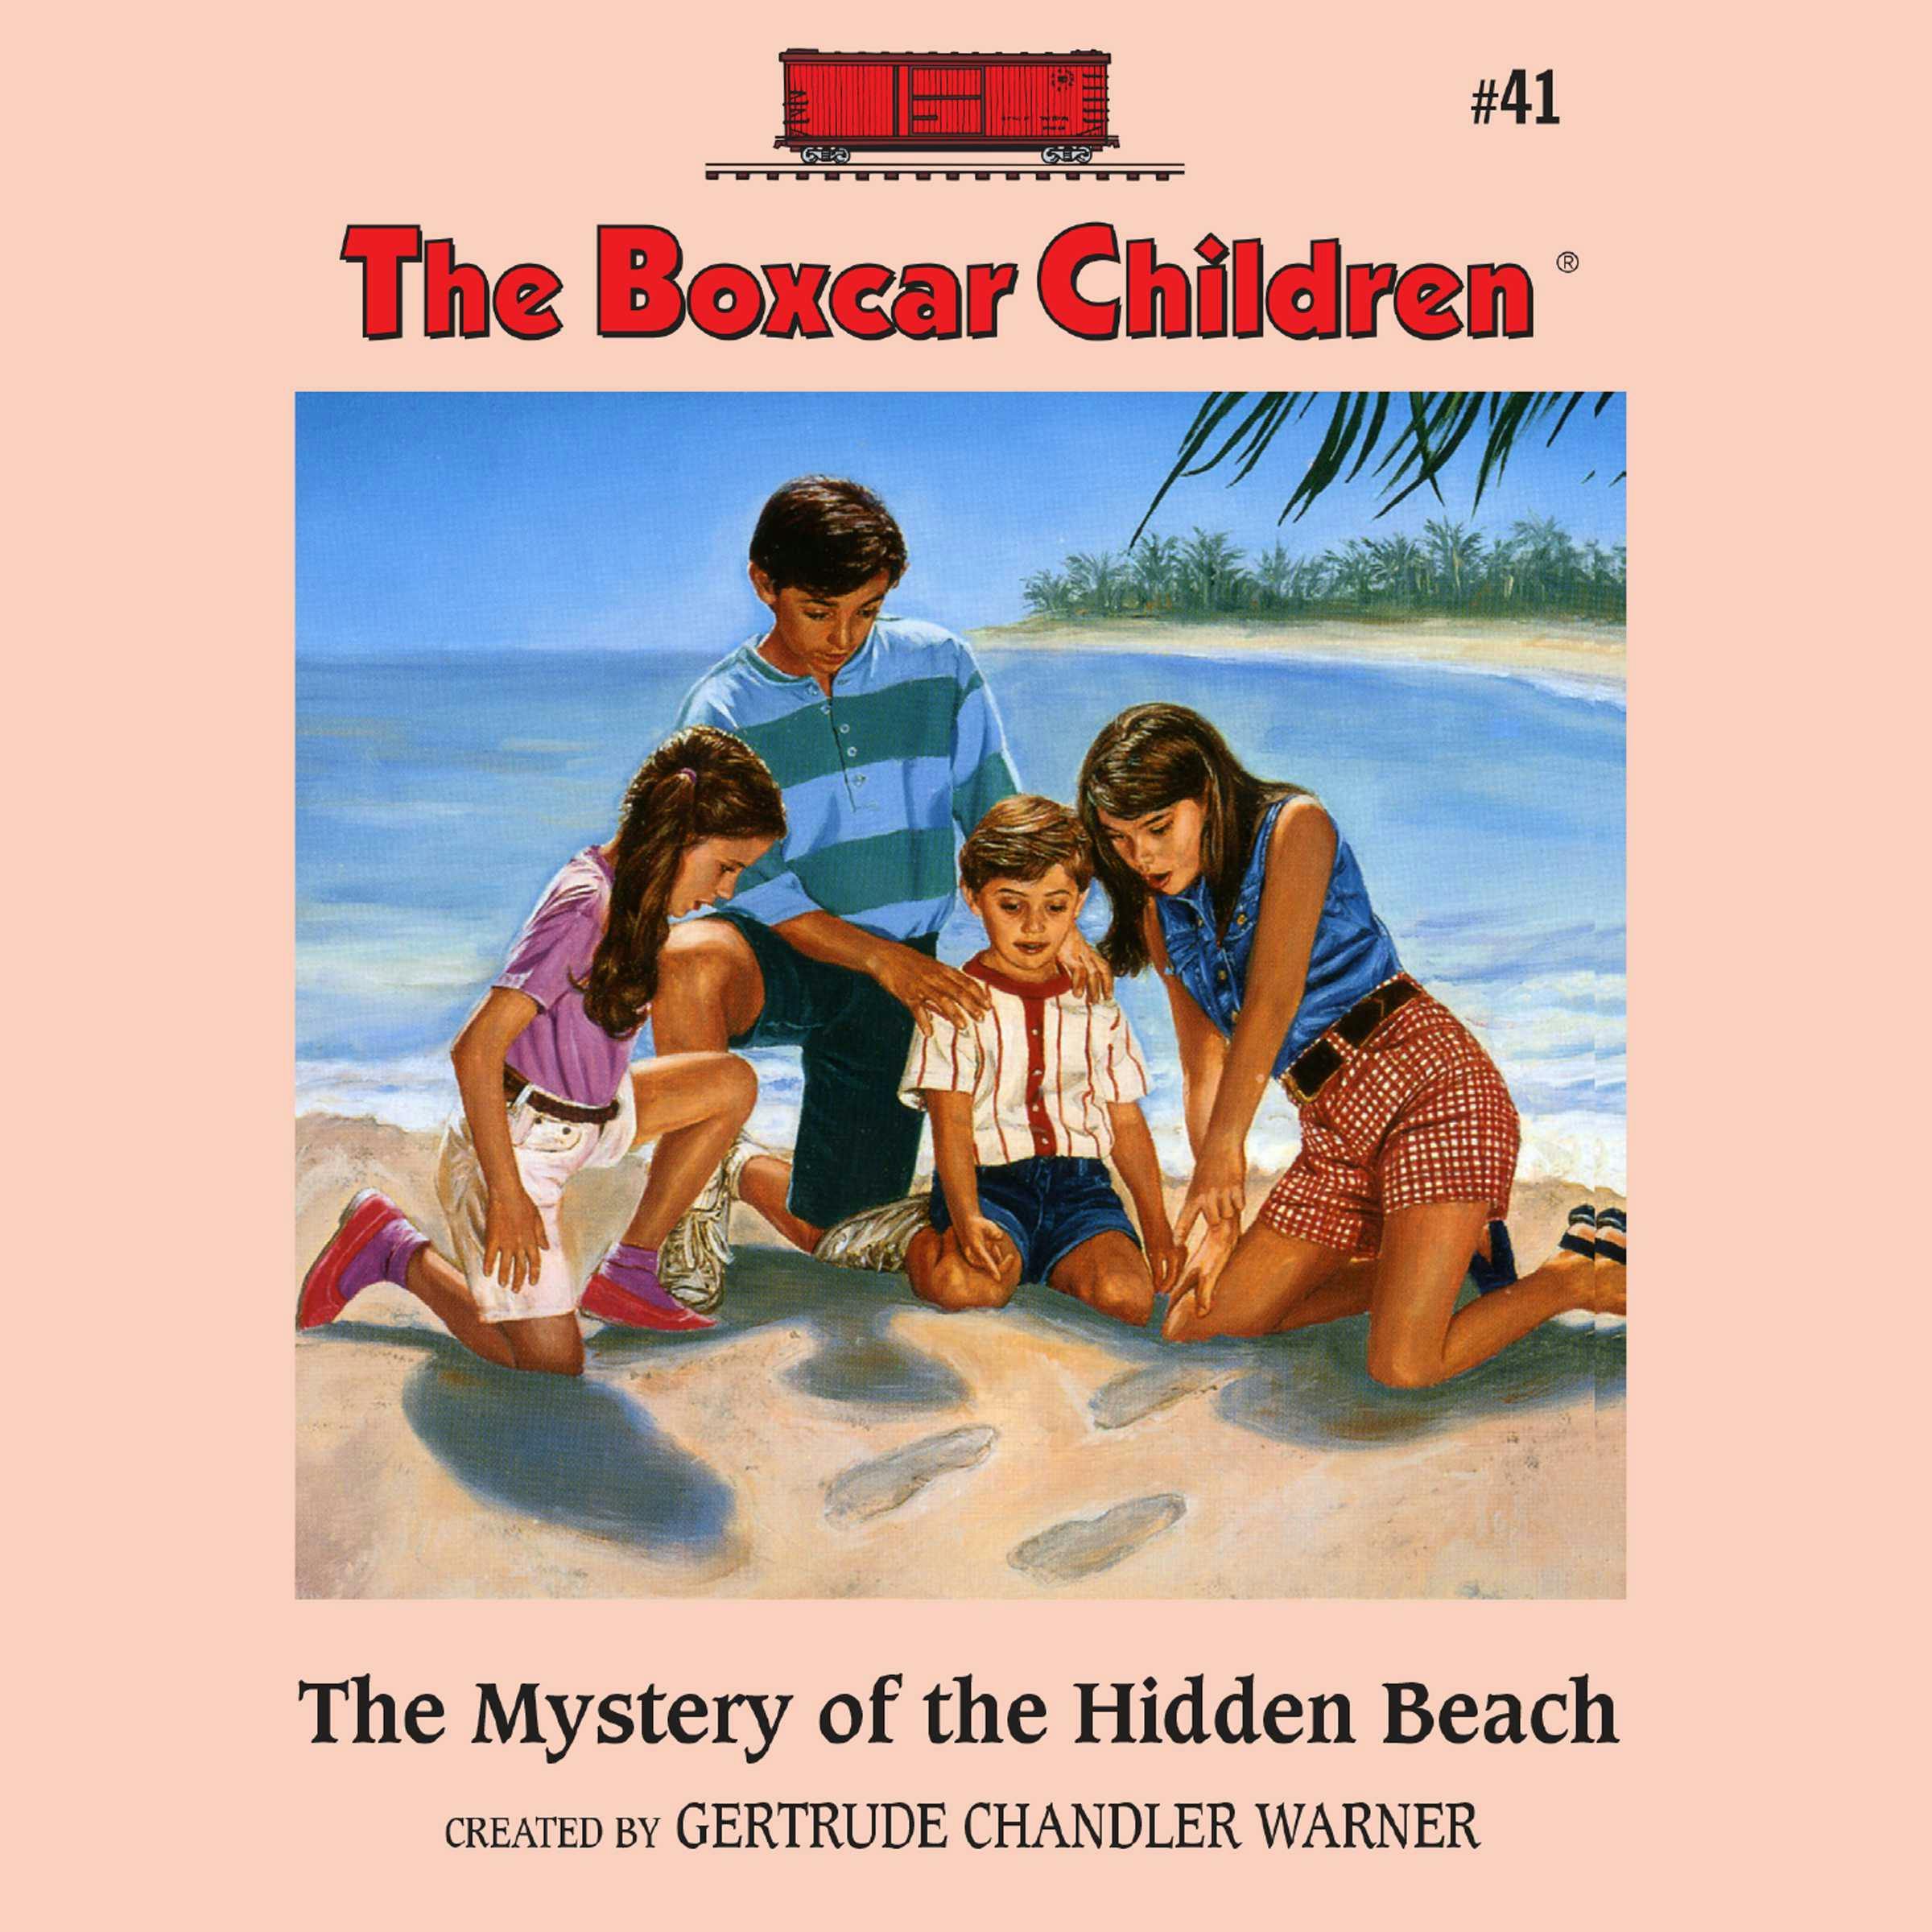 The Mystery of the Hidden Beach - Gertrude Chandler Warner